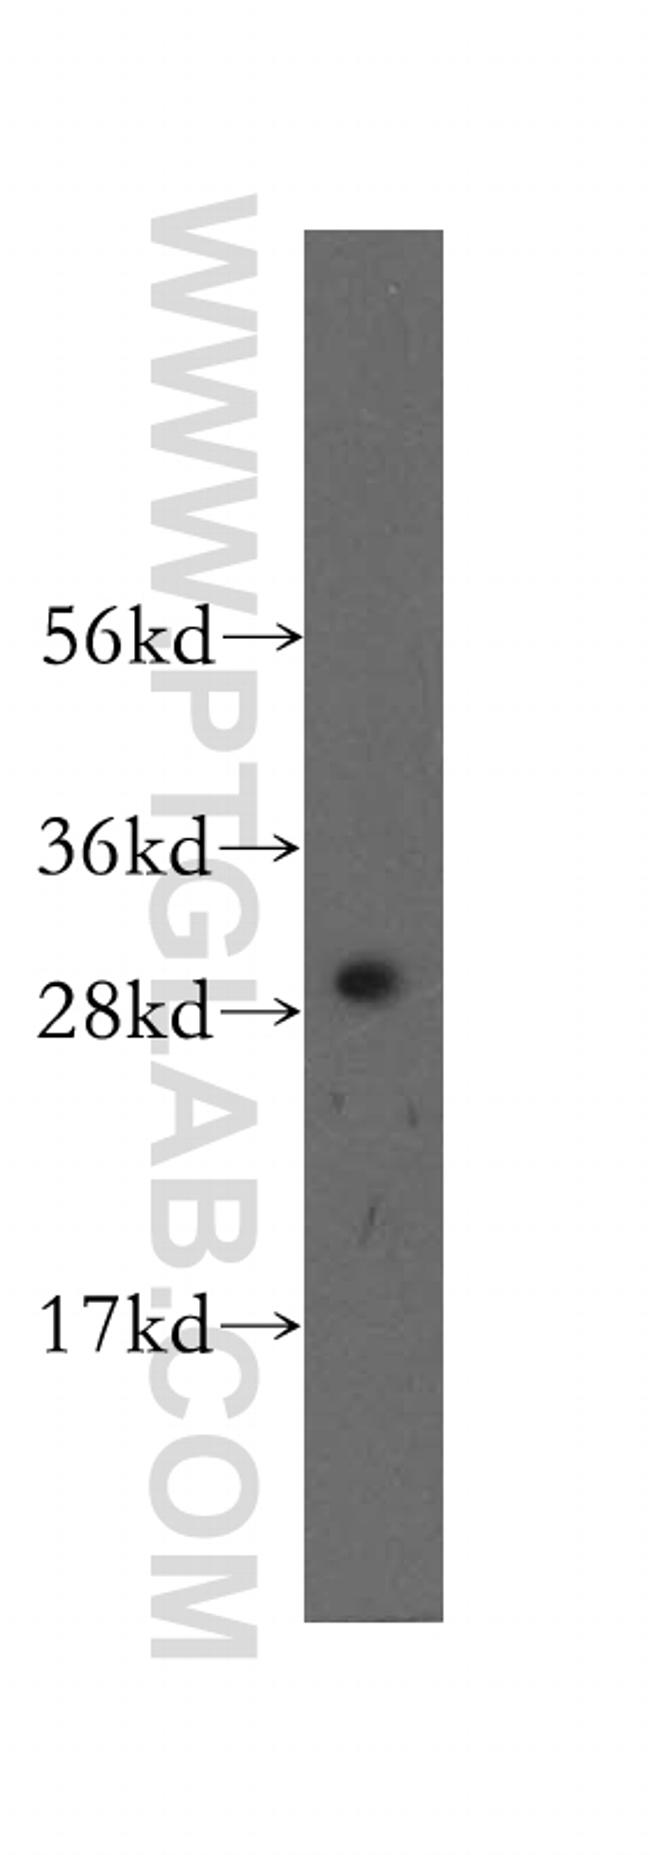 CLIC4 Antibody in Western Blot (WB)